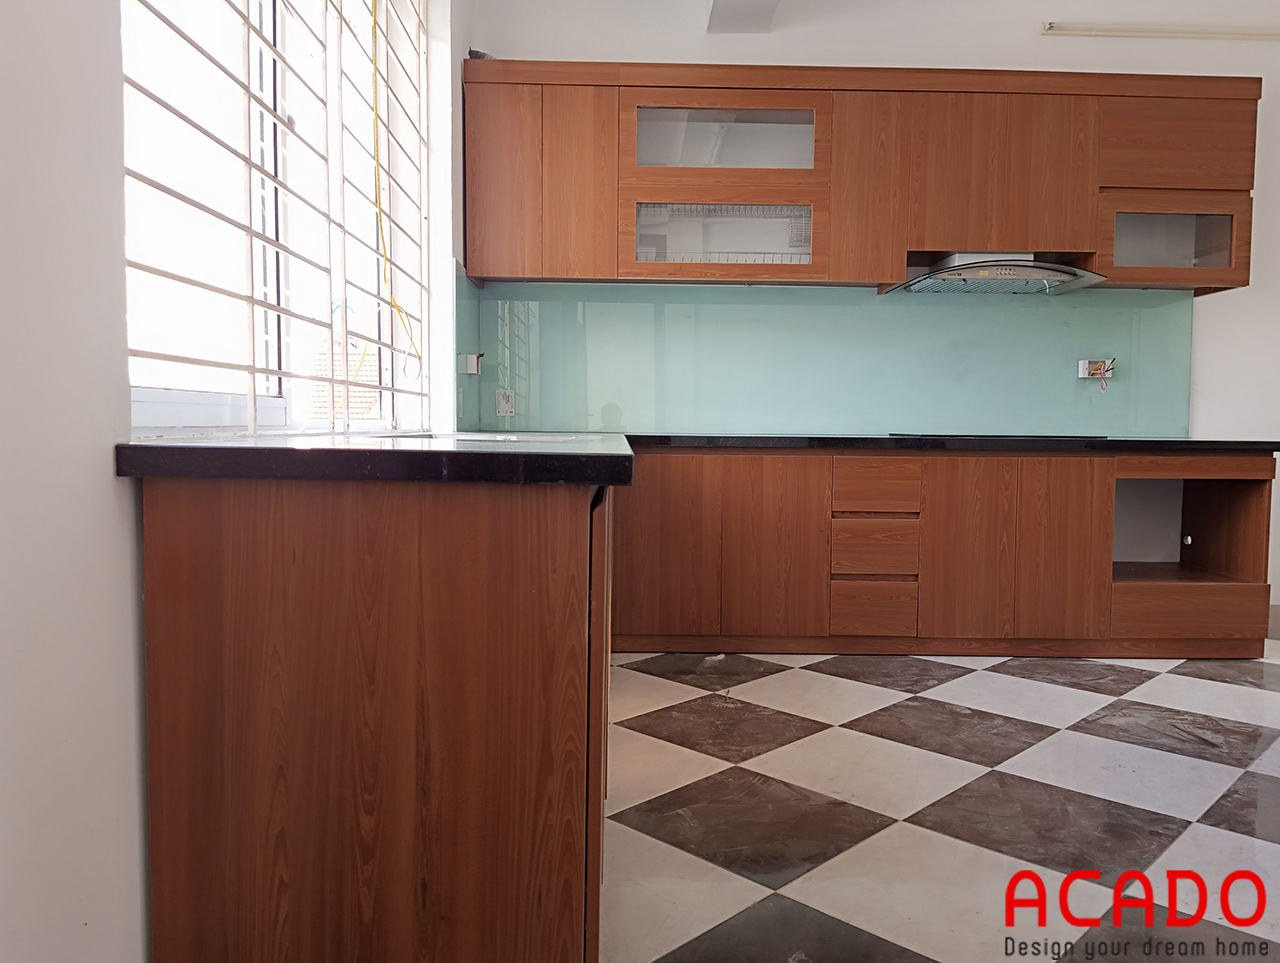 ACADO là đơn vị thiết kế và thi công tủ bếp uy tín tại Hà Nội